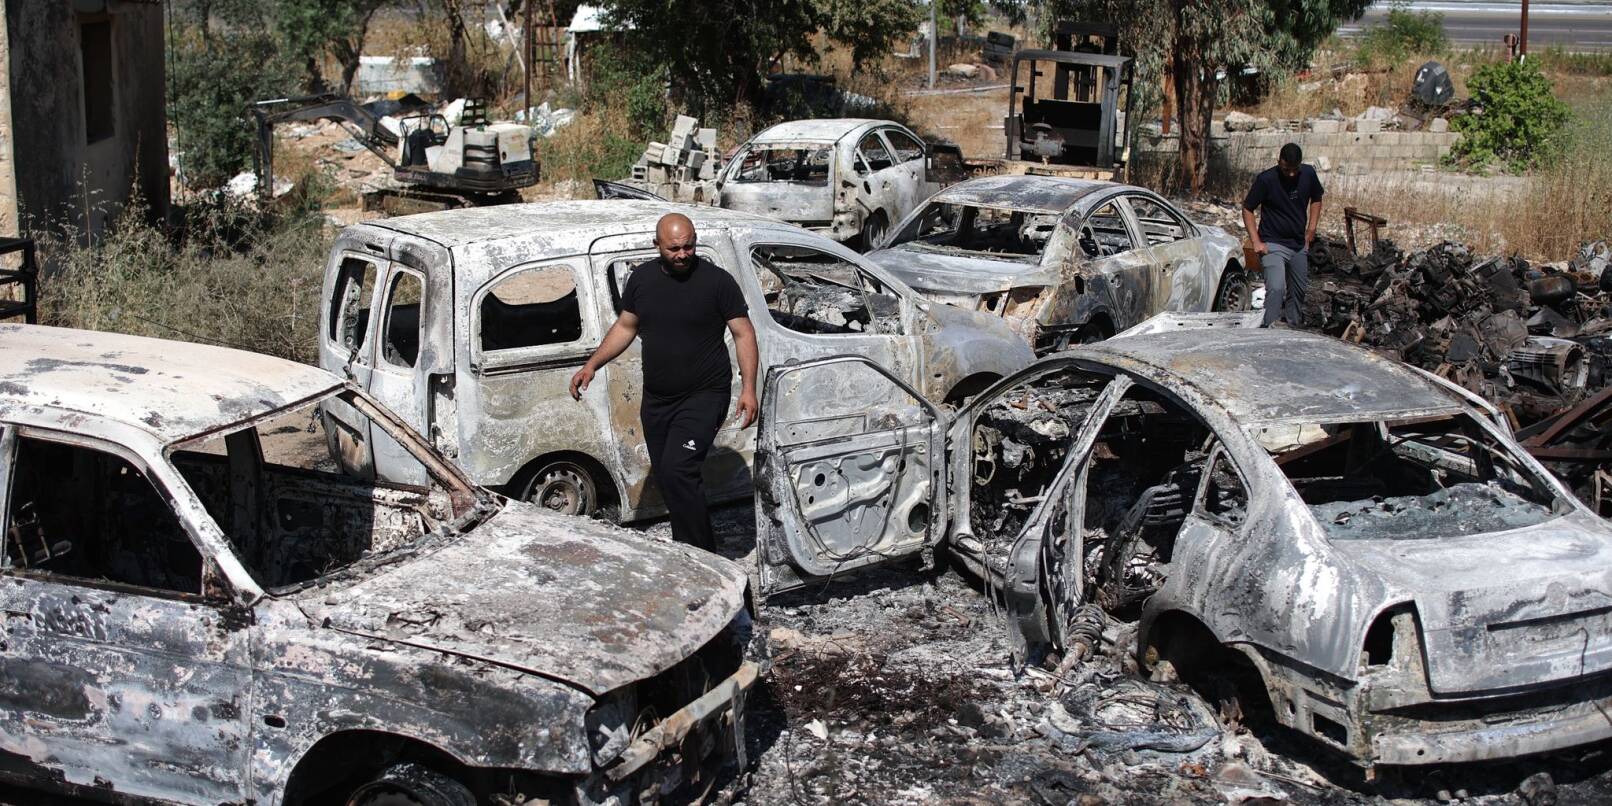 Zahlreiche Autos gingen bei den Ausschreitungen israelischer Siedler im Westjordanland in Flammen auf.